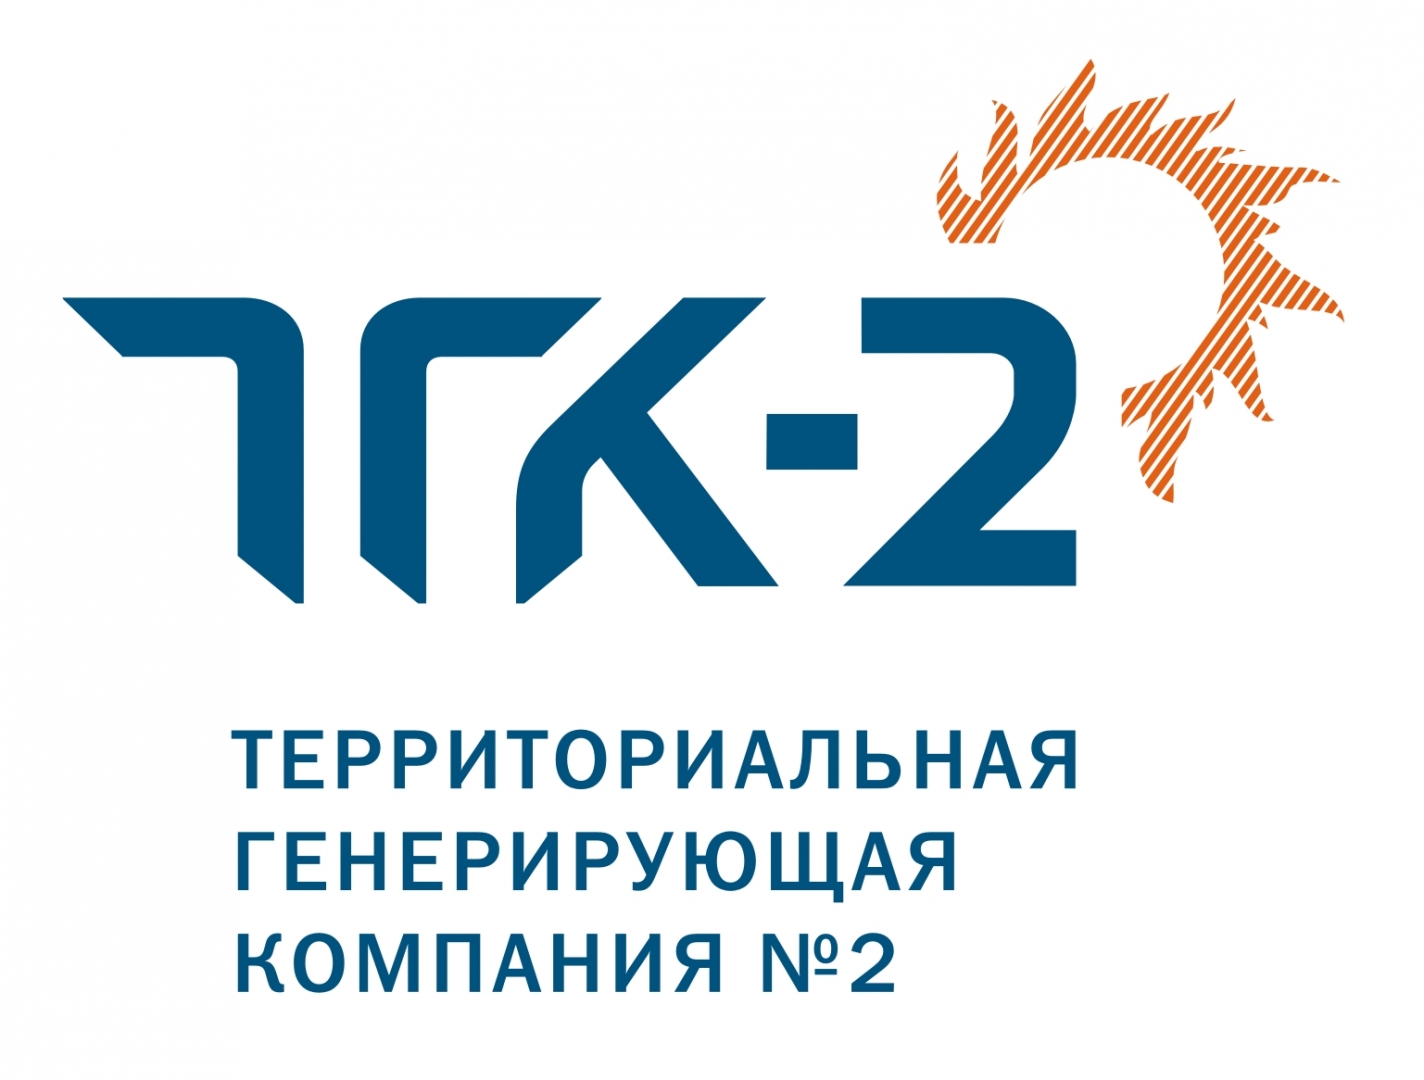 В Ярославле прокуратура заставила ТГК-2 вернуть обманутым гражданам 3,2 млн